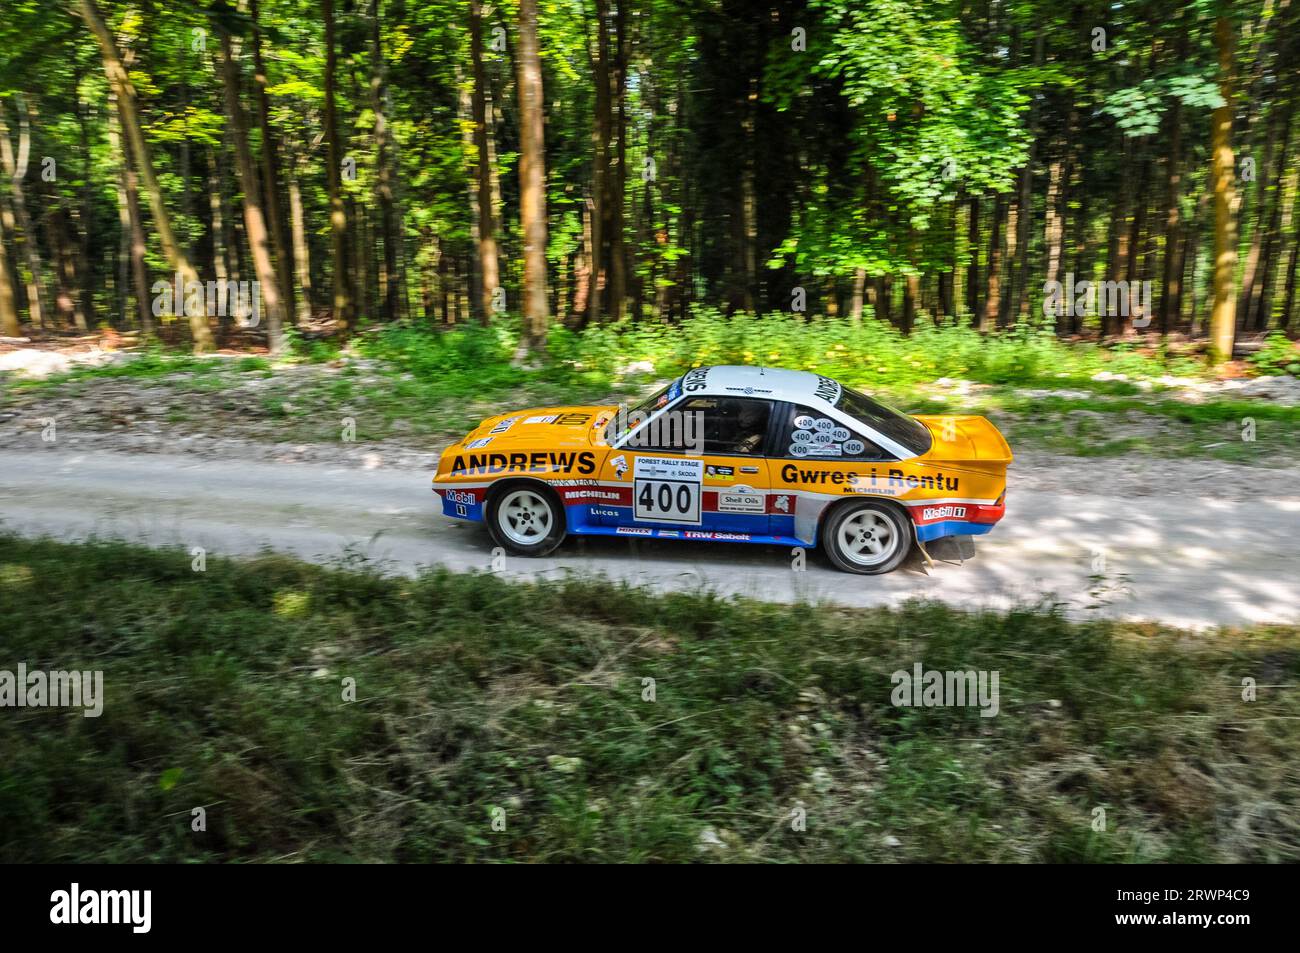 Opel Manta 400 Groupe B course de voiture de rallye à travers la scène de rallye de forêt au festival Goodwood de vitesse 2013. Flou de mouvement, vitesse. Banque D'Images